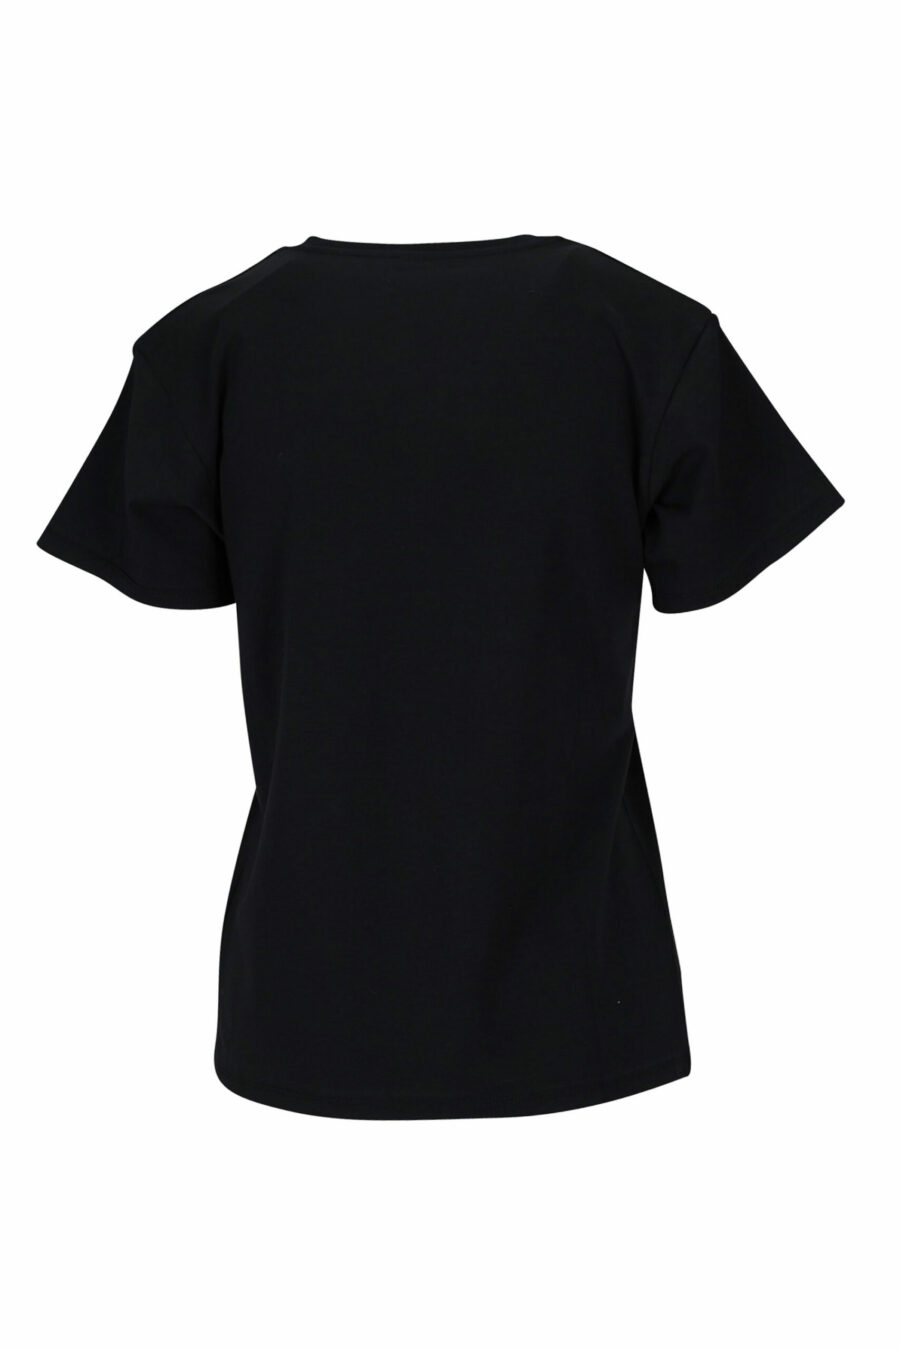 T-shirt noir avec col en V et logo ruban monochrome - 889316614954 1 à l'échelle